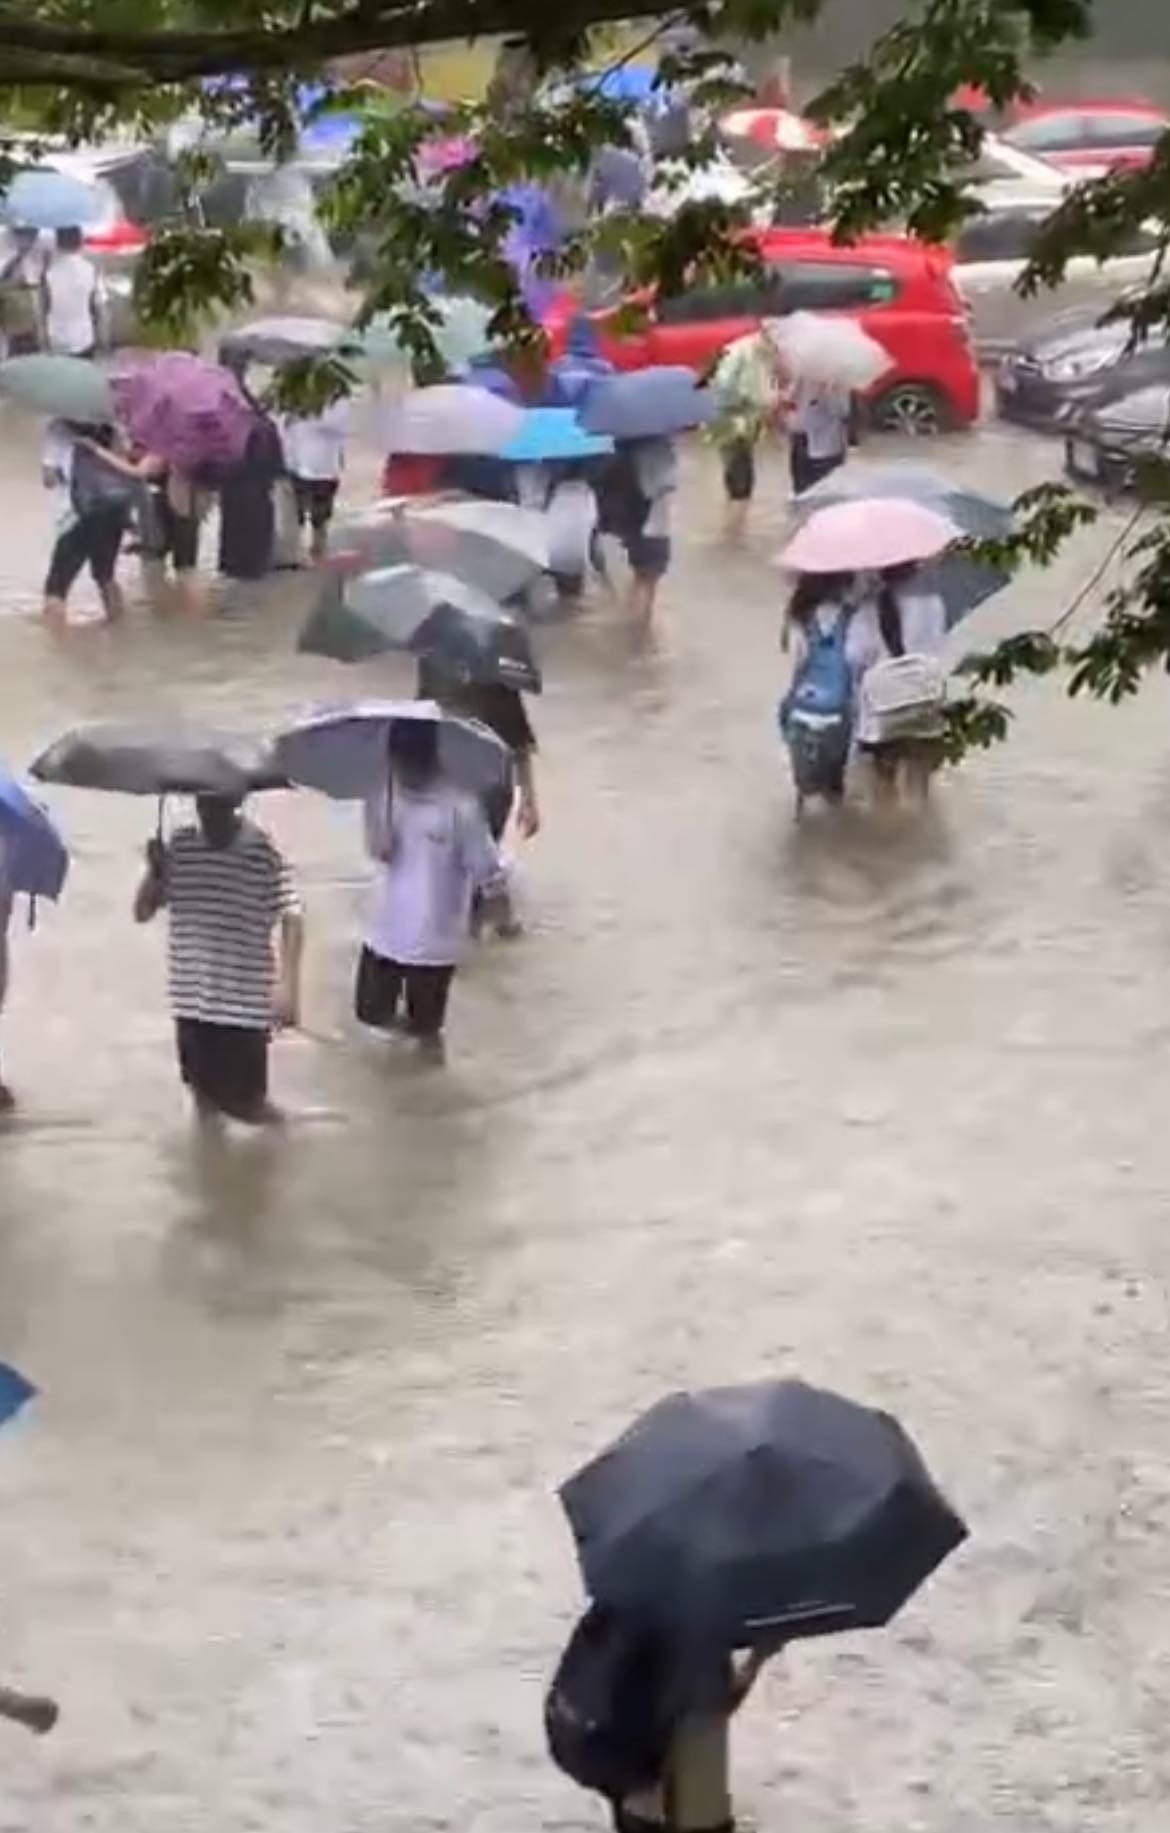 Hà Nội mưa ngập các trường học: Học sinh tung tăng bơi lội dưới sân, cô giáo ngồi tát nước - Ảnh 2.